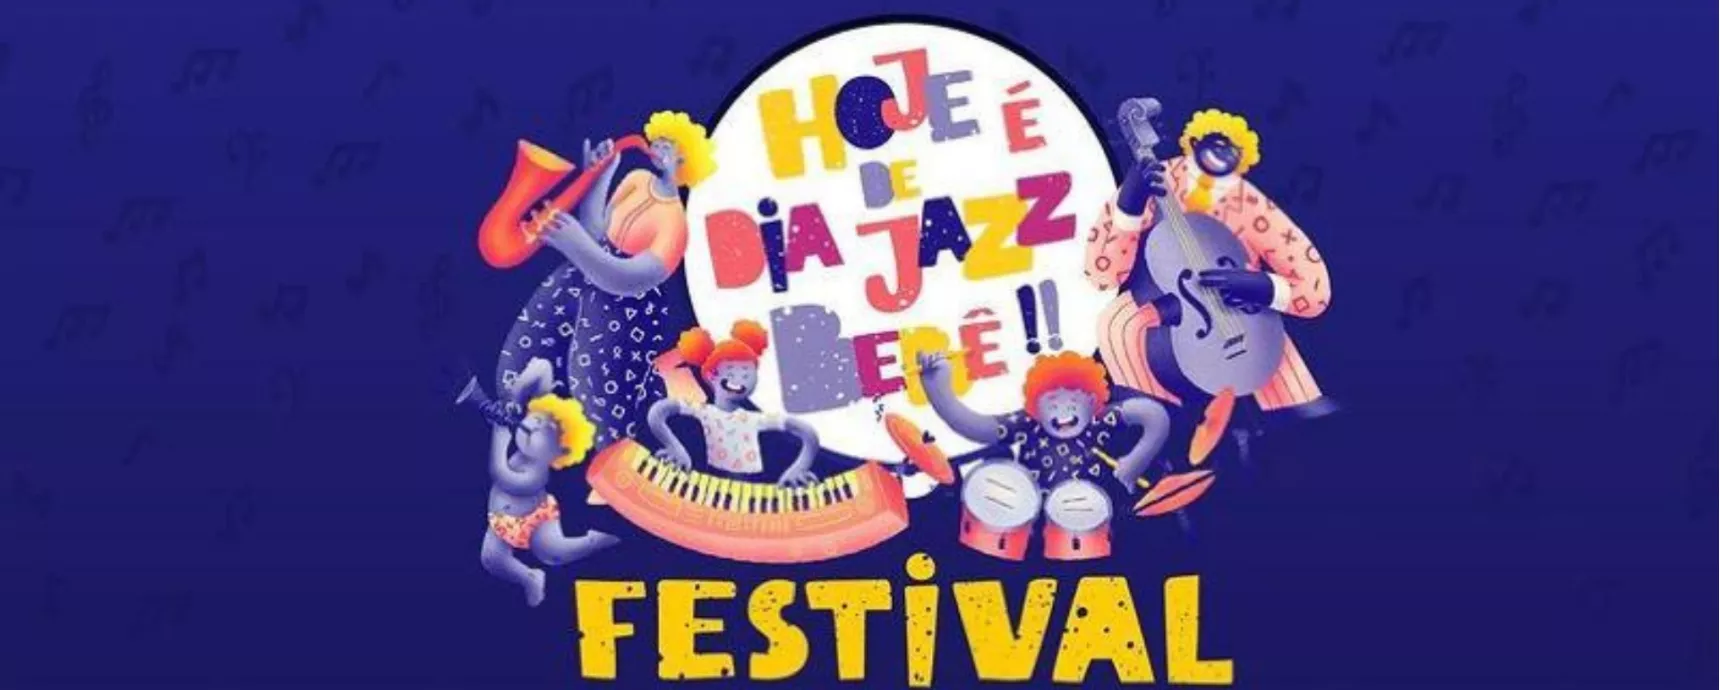 Veranstaltung Heute ist Baby Jazz Day Festival wird verschoben